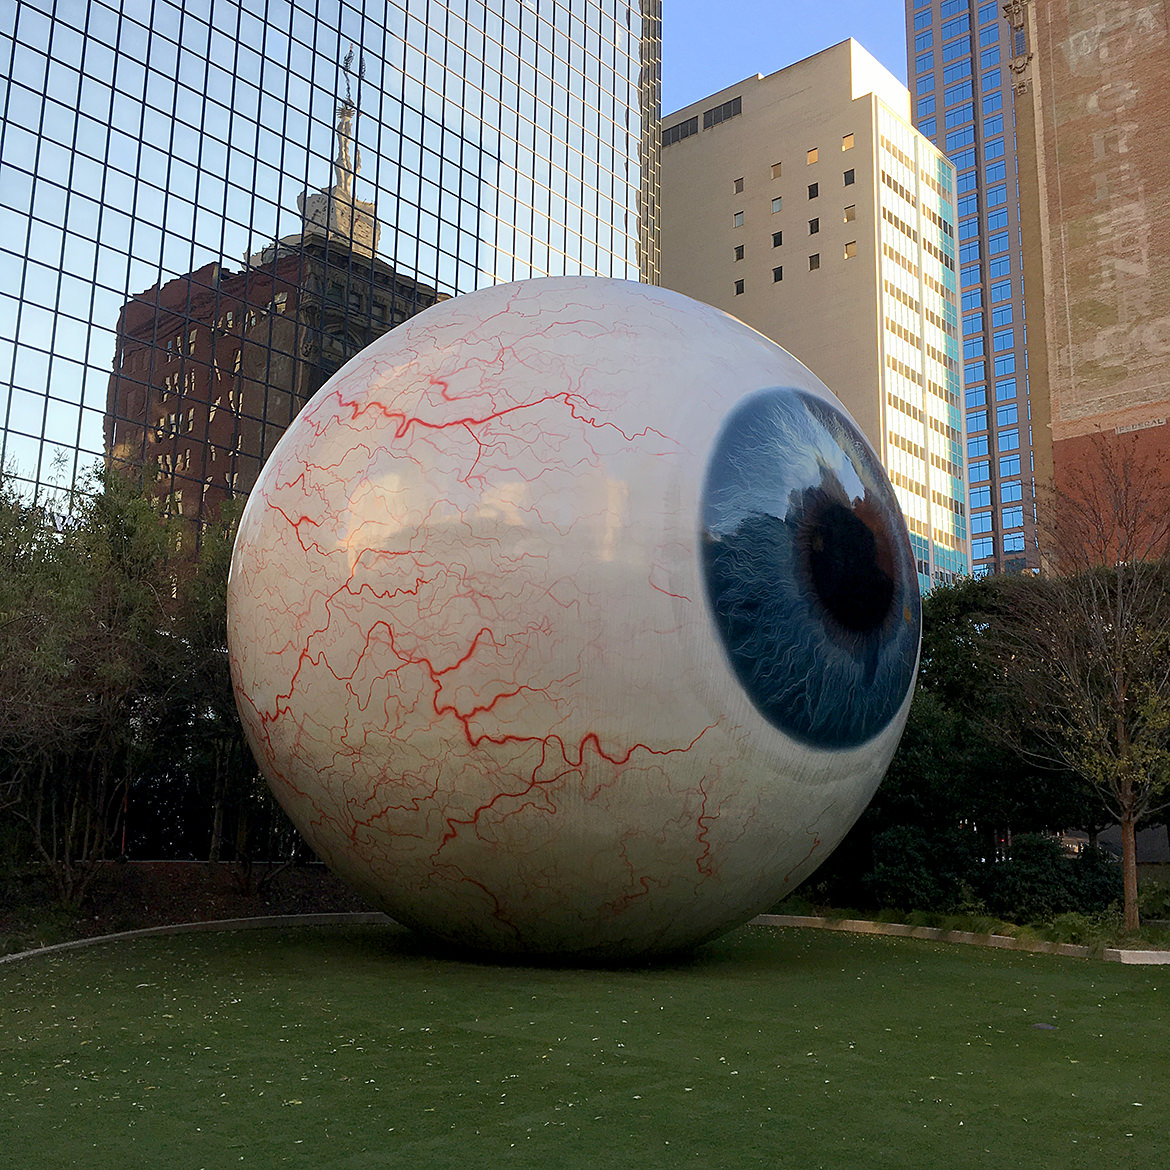 a giant fiberglass sculpture of a human eye